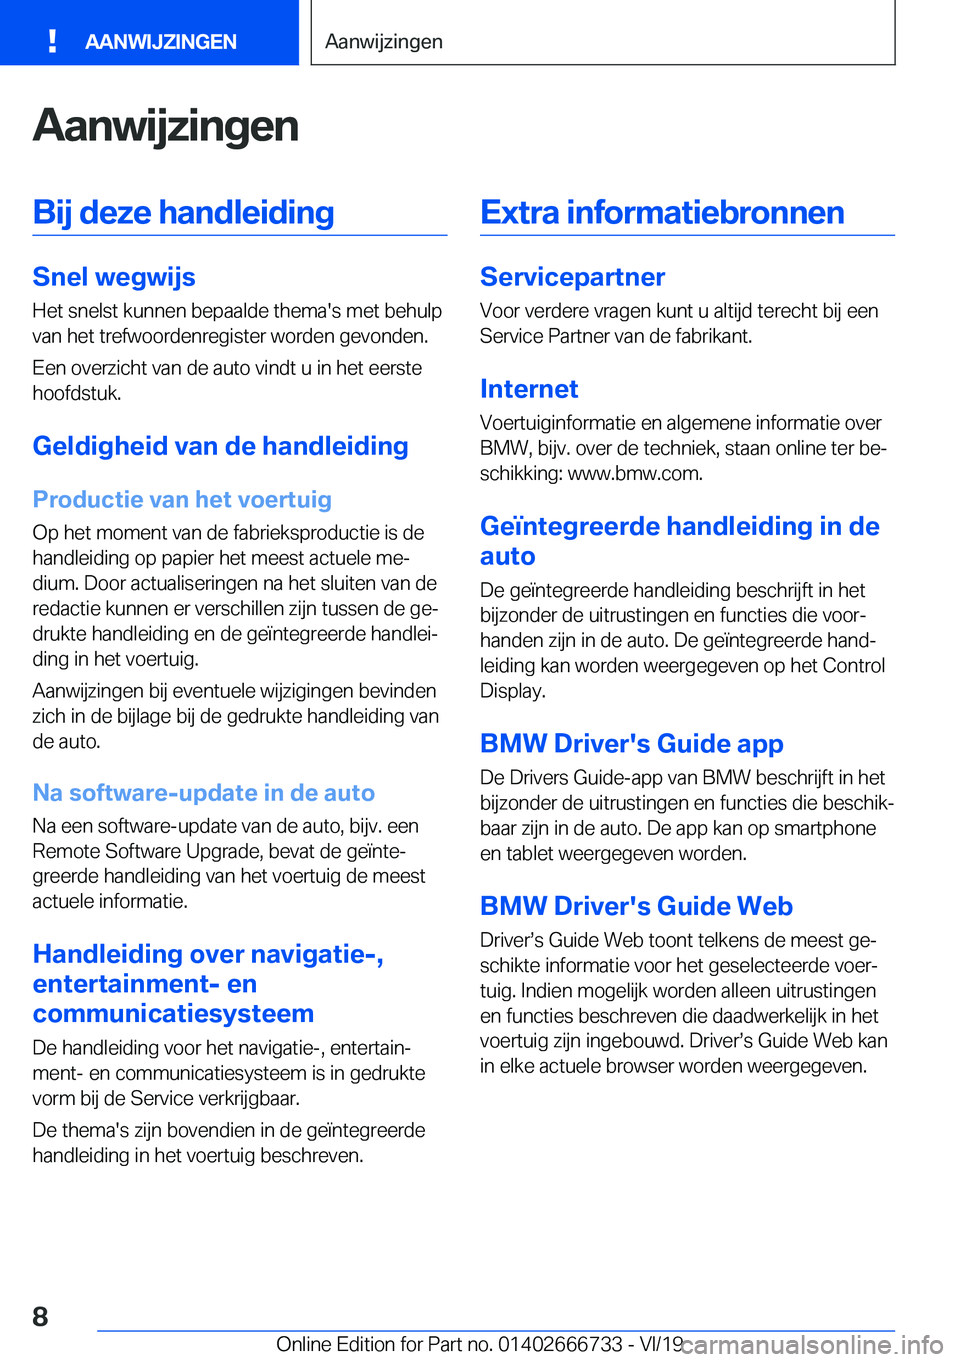 BMW M5 2020  Instructieboekjes (in Dutch) �A�a�n�w�i�j�z�i�n�g�e�n�B�i�j��d�e�z�e��h�a�n�d�l�e�i�d�i�n�g
�S�n�e�l��w�e�g�w�i�j�s
�H�e�t��s�n�e�l�s�t��k�u�n�n�e�n��b�e�p�a�a�l�d�e��t�h�e�m�a�'�s��m�e�t��b�e�h�u�l�p
�v�a�n��h�e�t�